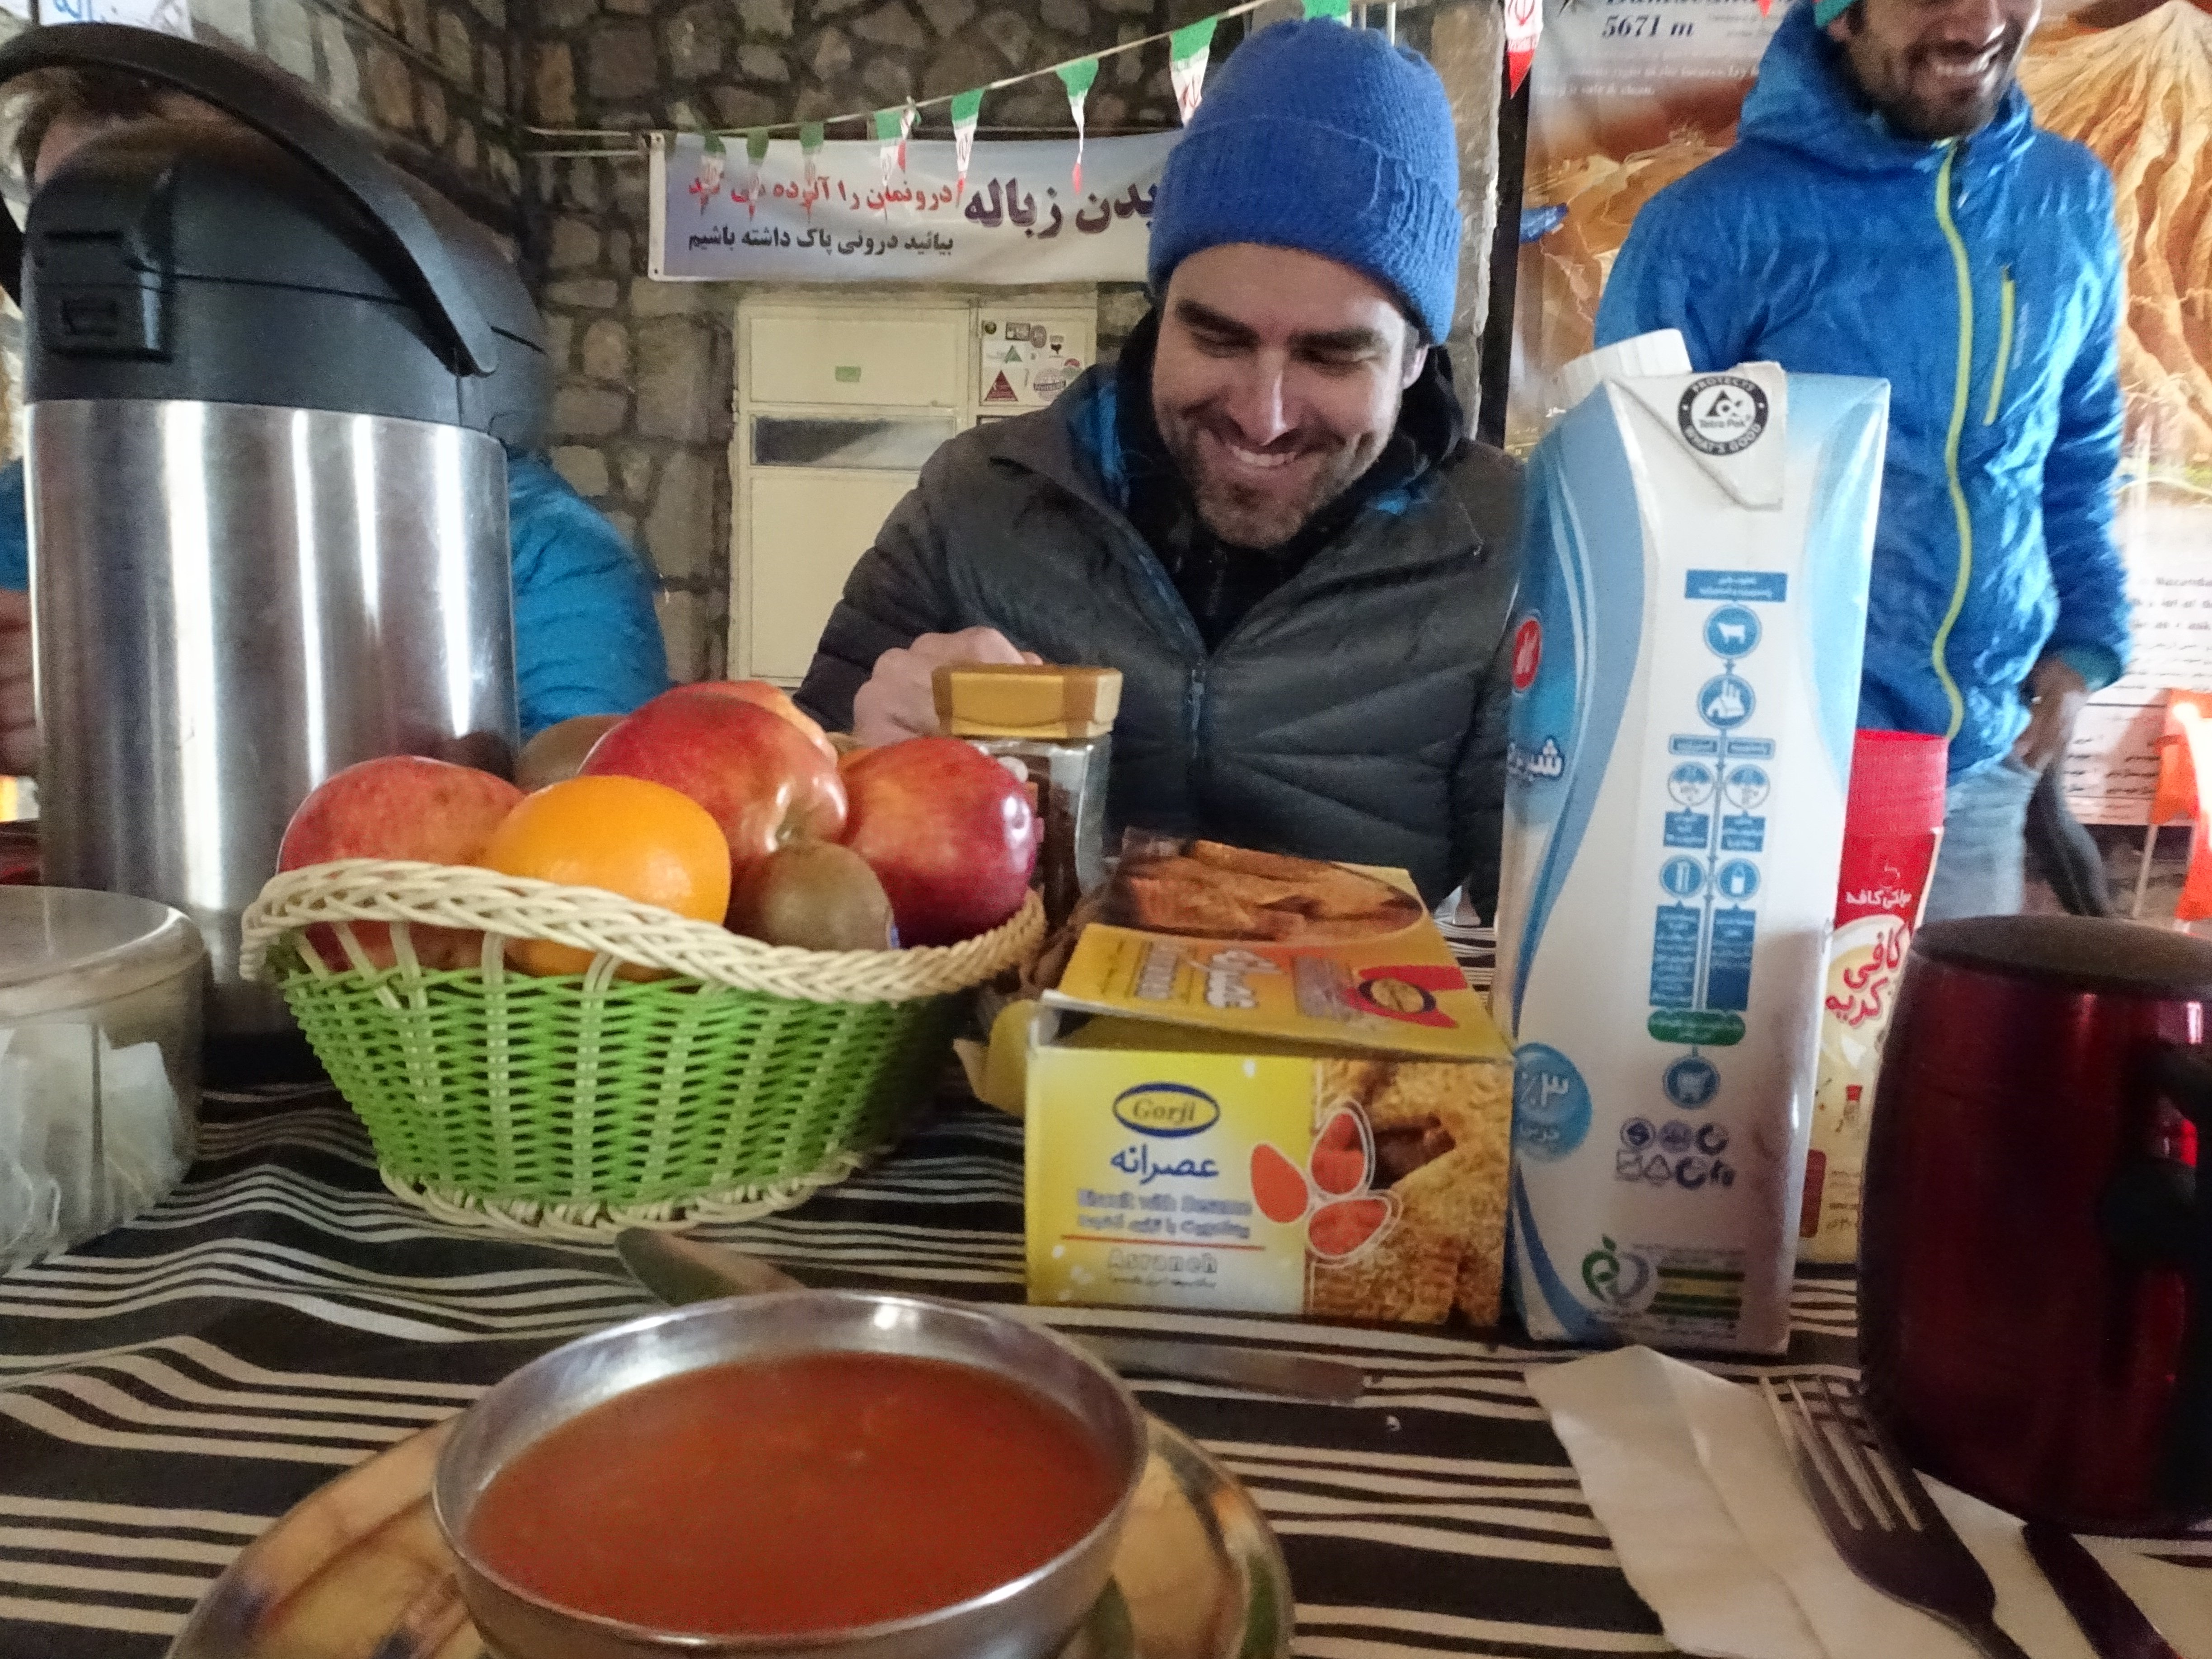 Skitouren Iran